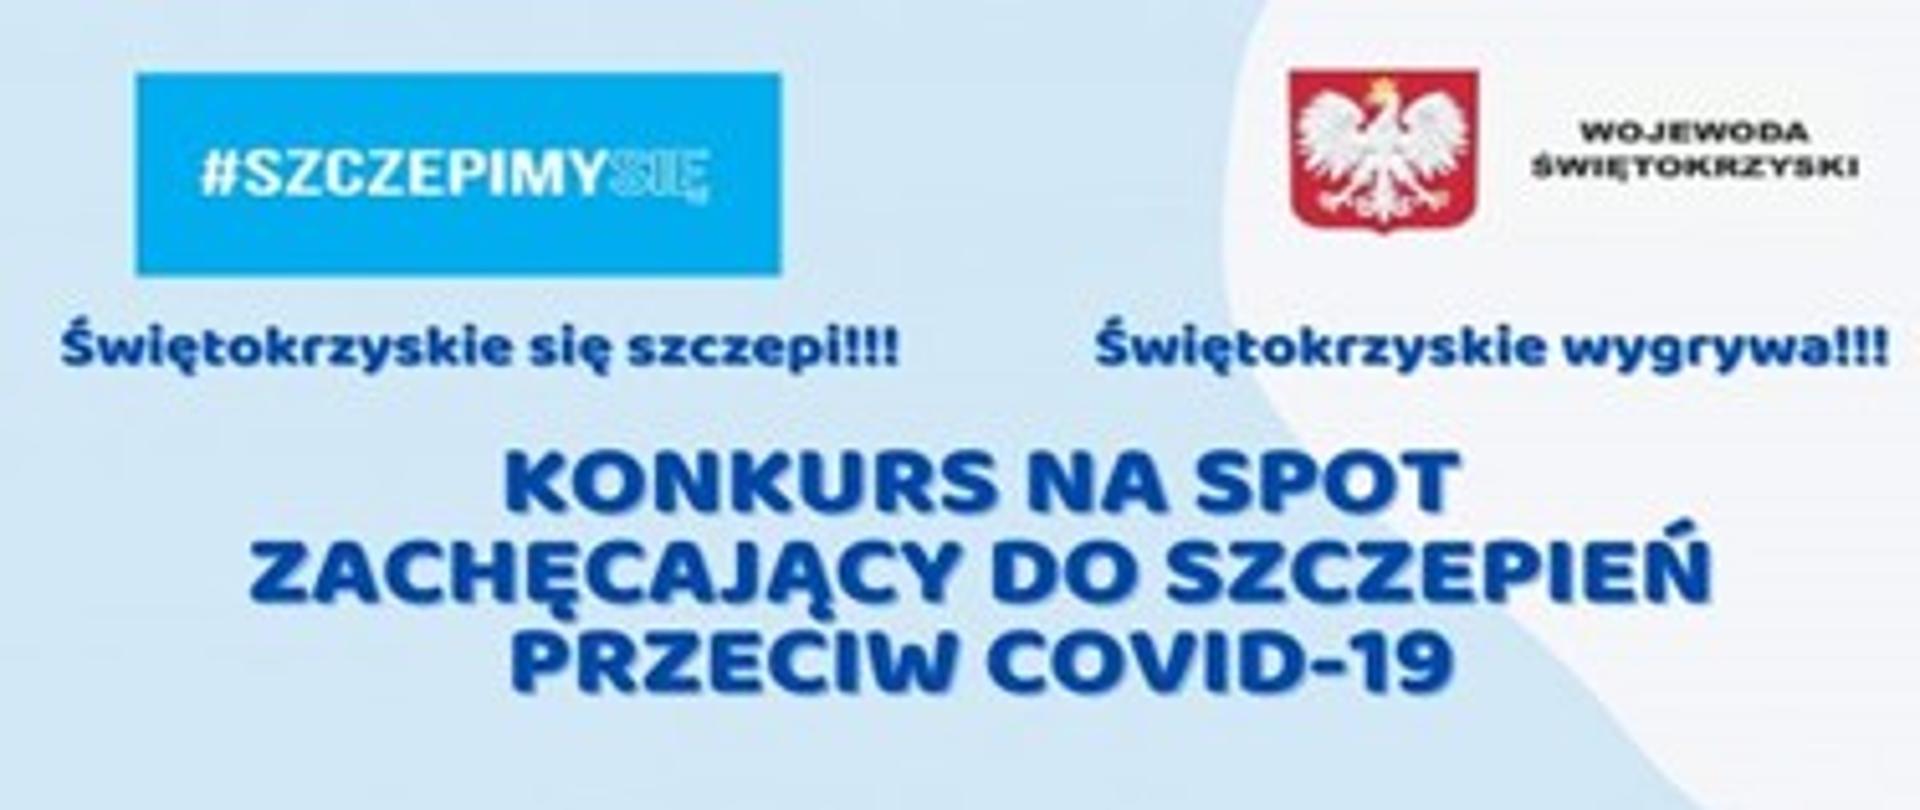 Plakat Urzędu Wojewódzkiego informujący o konkursie